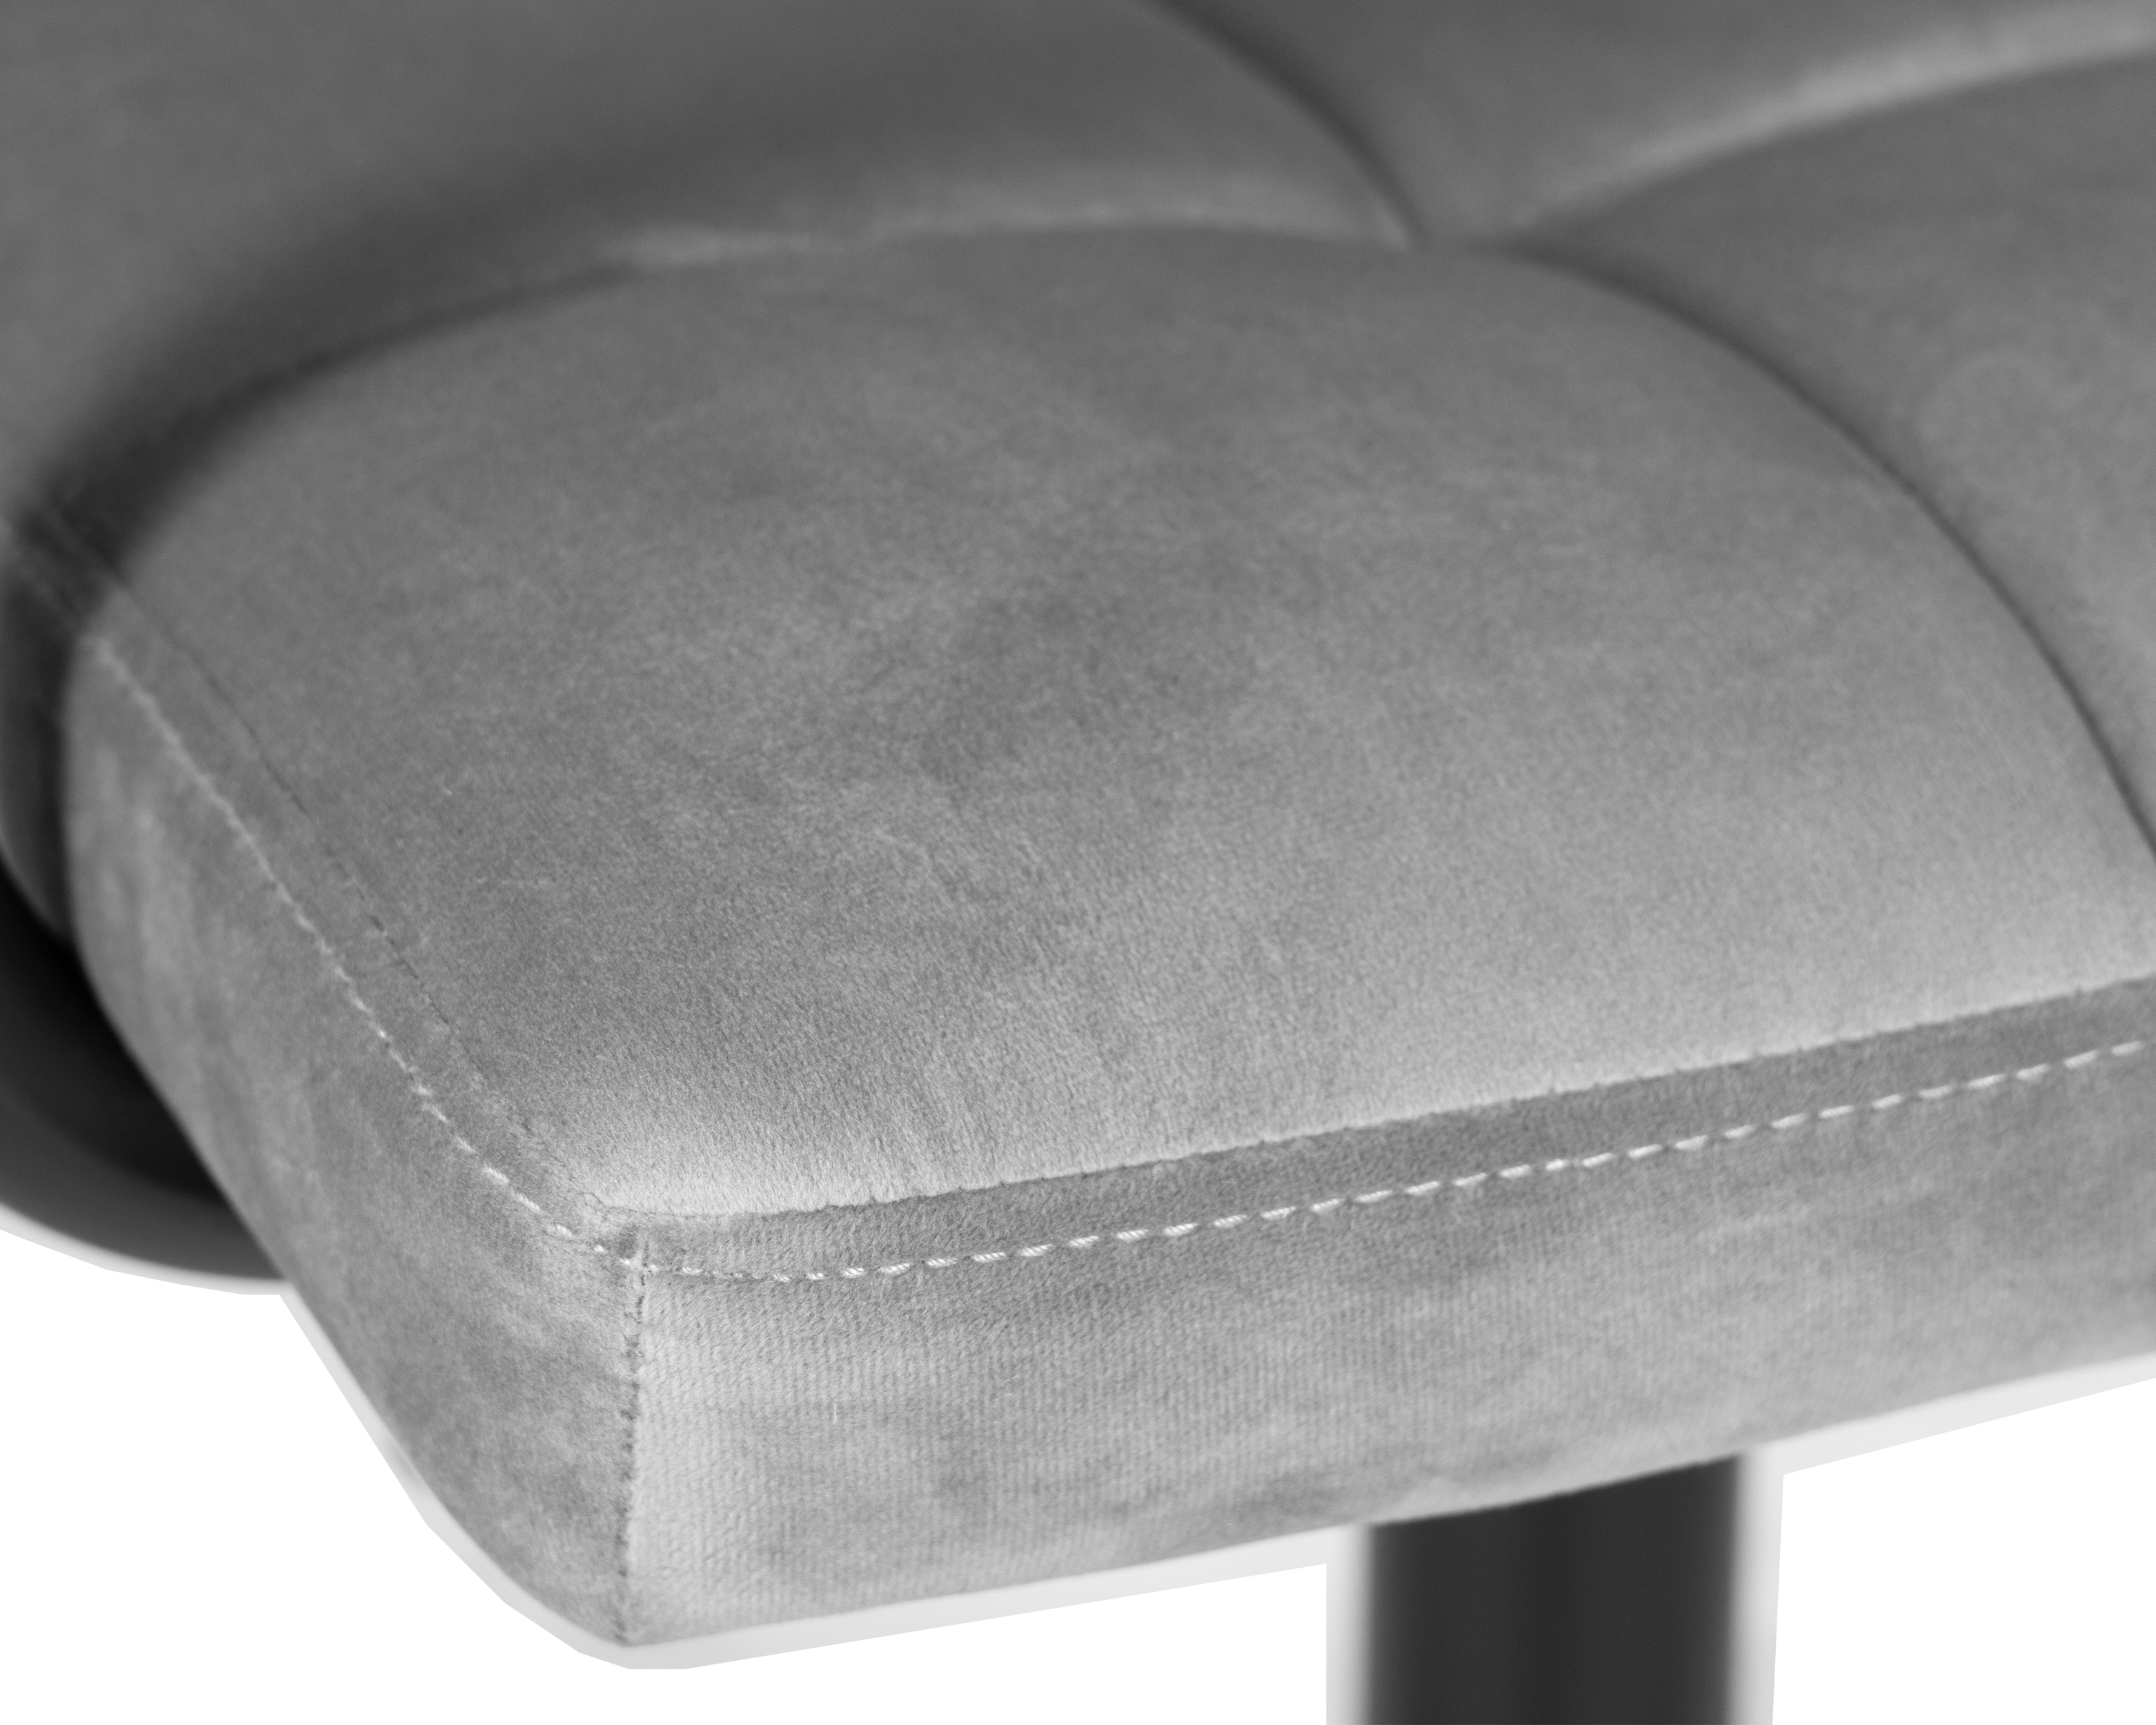 Офисное кресло для персонала DOBRIN TERRY BLACK (серый велюр (MJ9-75))